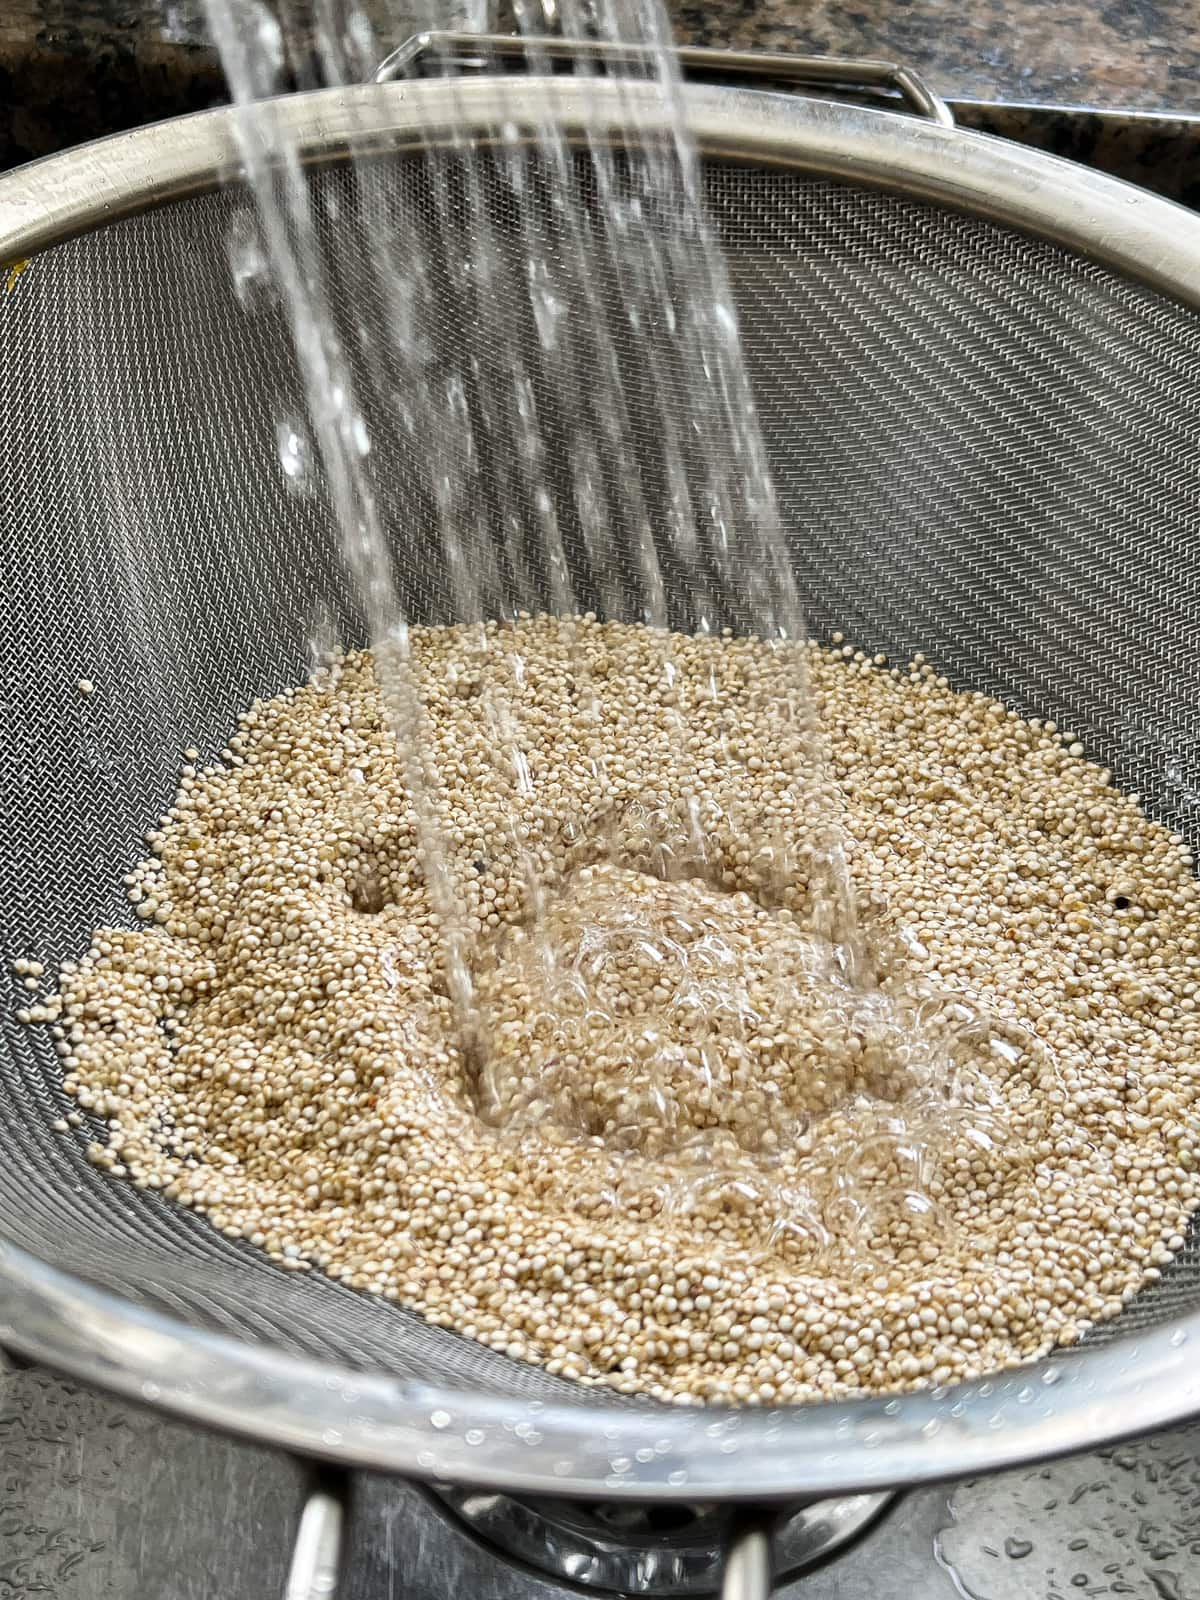 White quinoa being rinsed in a fine mesh sieve. 